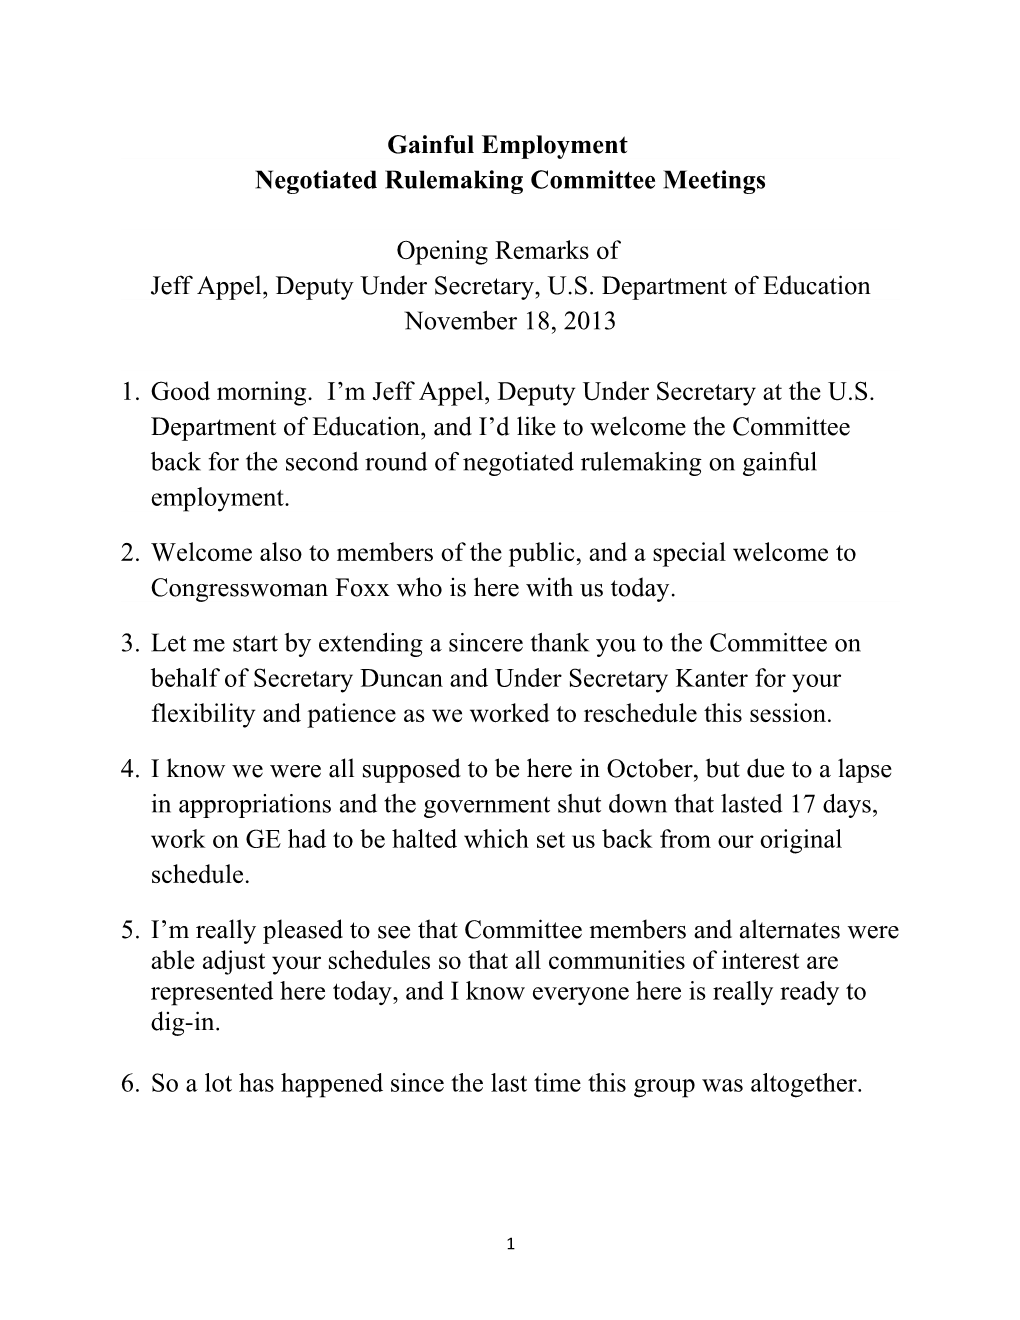 Negotiated Rulemaking Committee Meetings